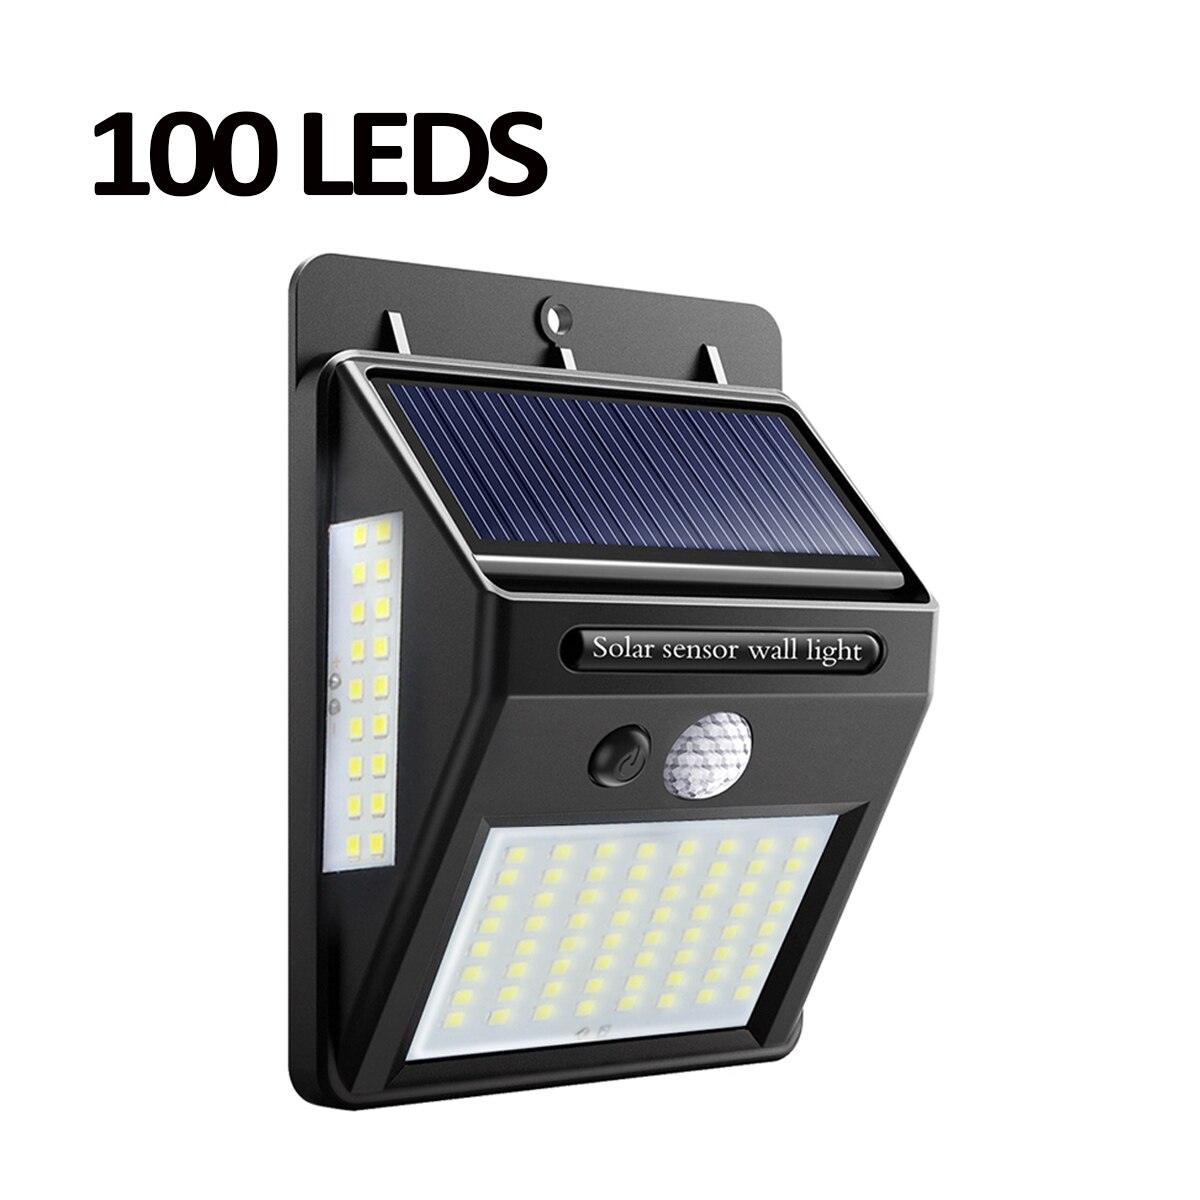 Sol-ledet gadebelysning til hjemmet 20 35 100 leds sollys vandtæt havehegn pir bevægelsessensor afsløring væglamper: 100 lysdioder